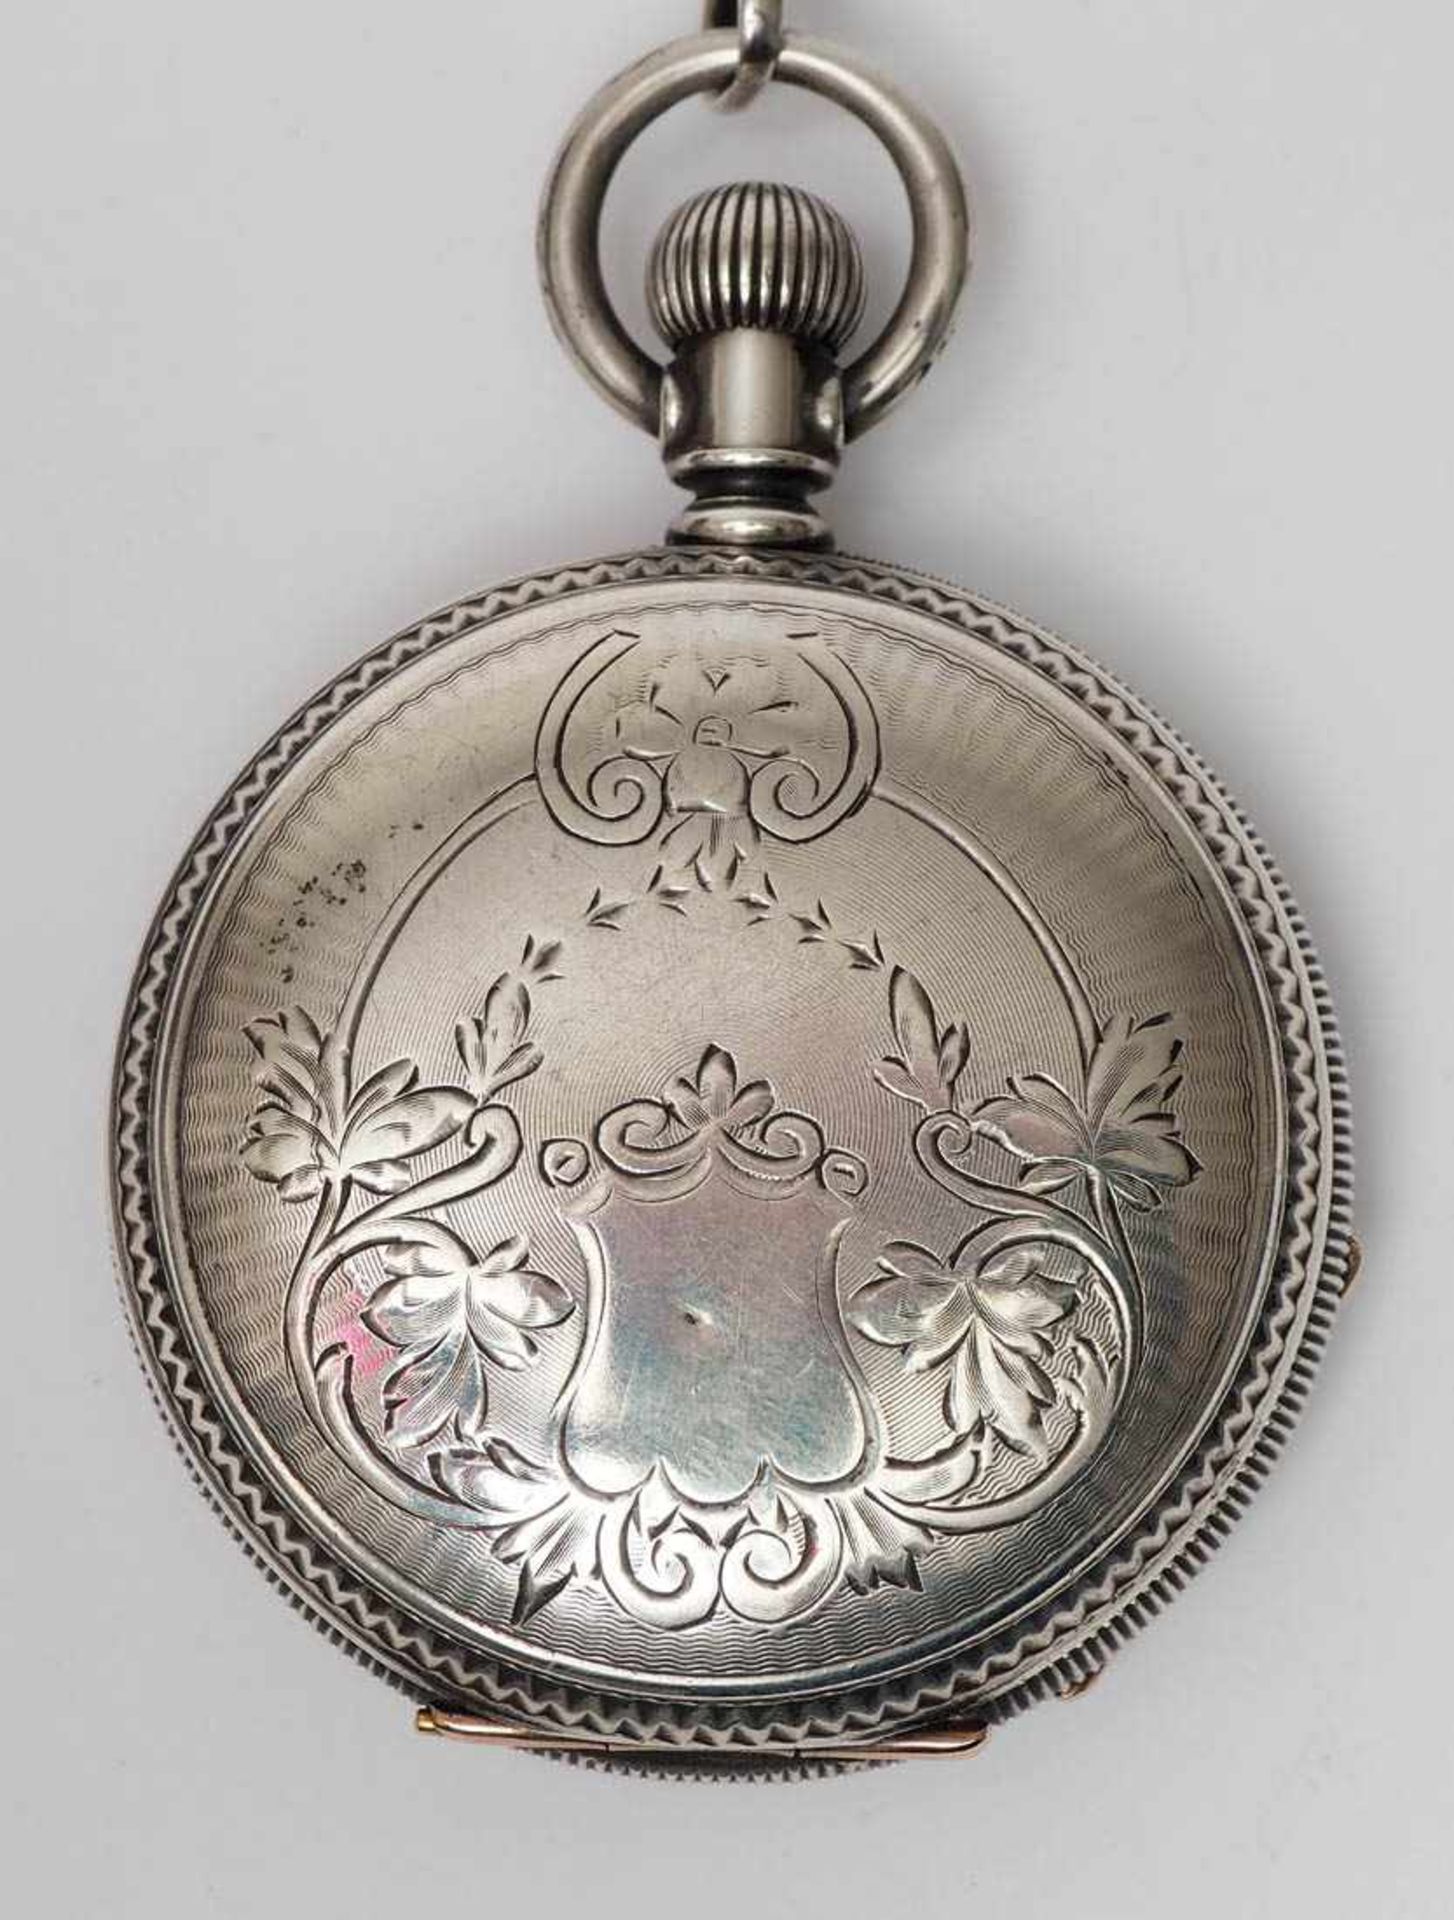 Herrentaschenuhr, Waltham, 19.Jhdt. Silbernes Savonettegehäuse, bez. "Coin silver", mit - Bild 2 aus 6